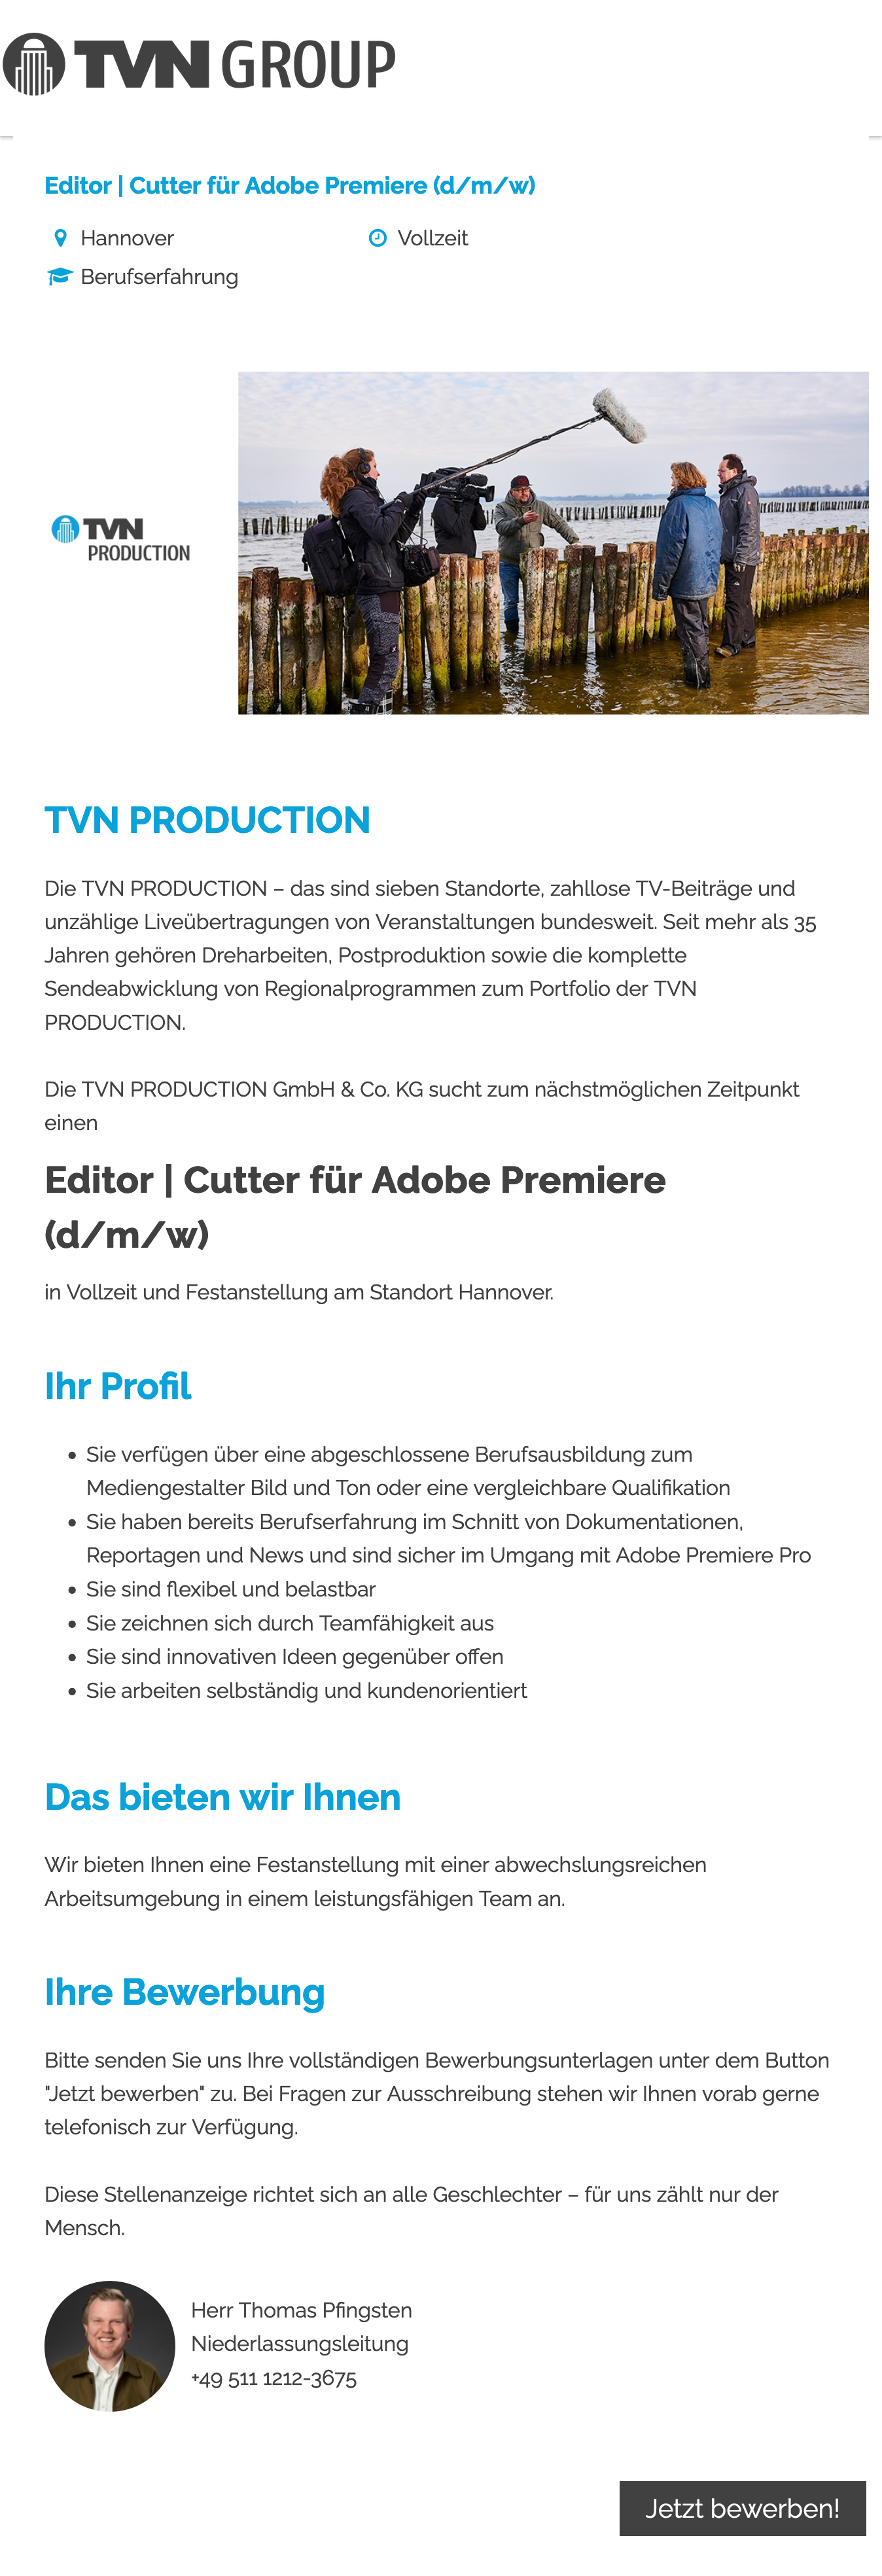 Editor / Cutter für Adobe Premiere (d/m/w)